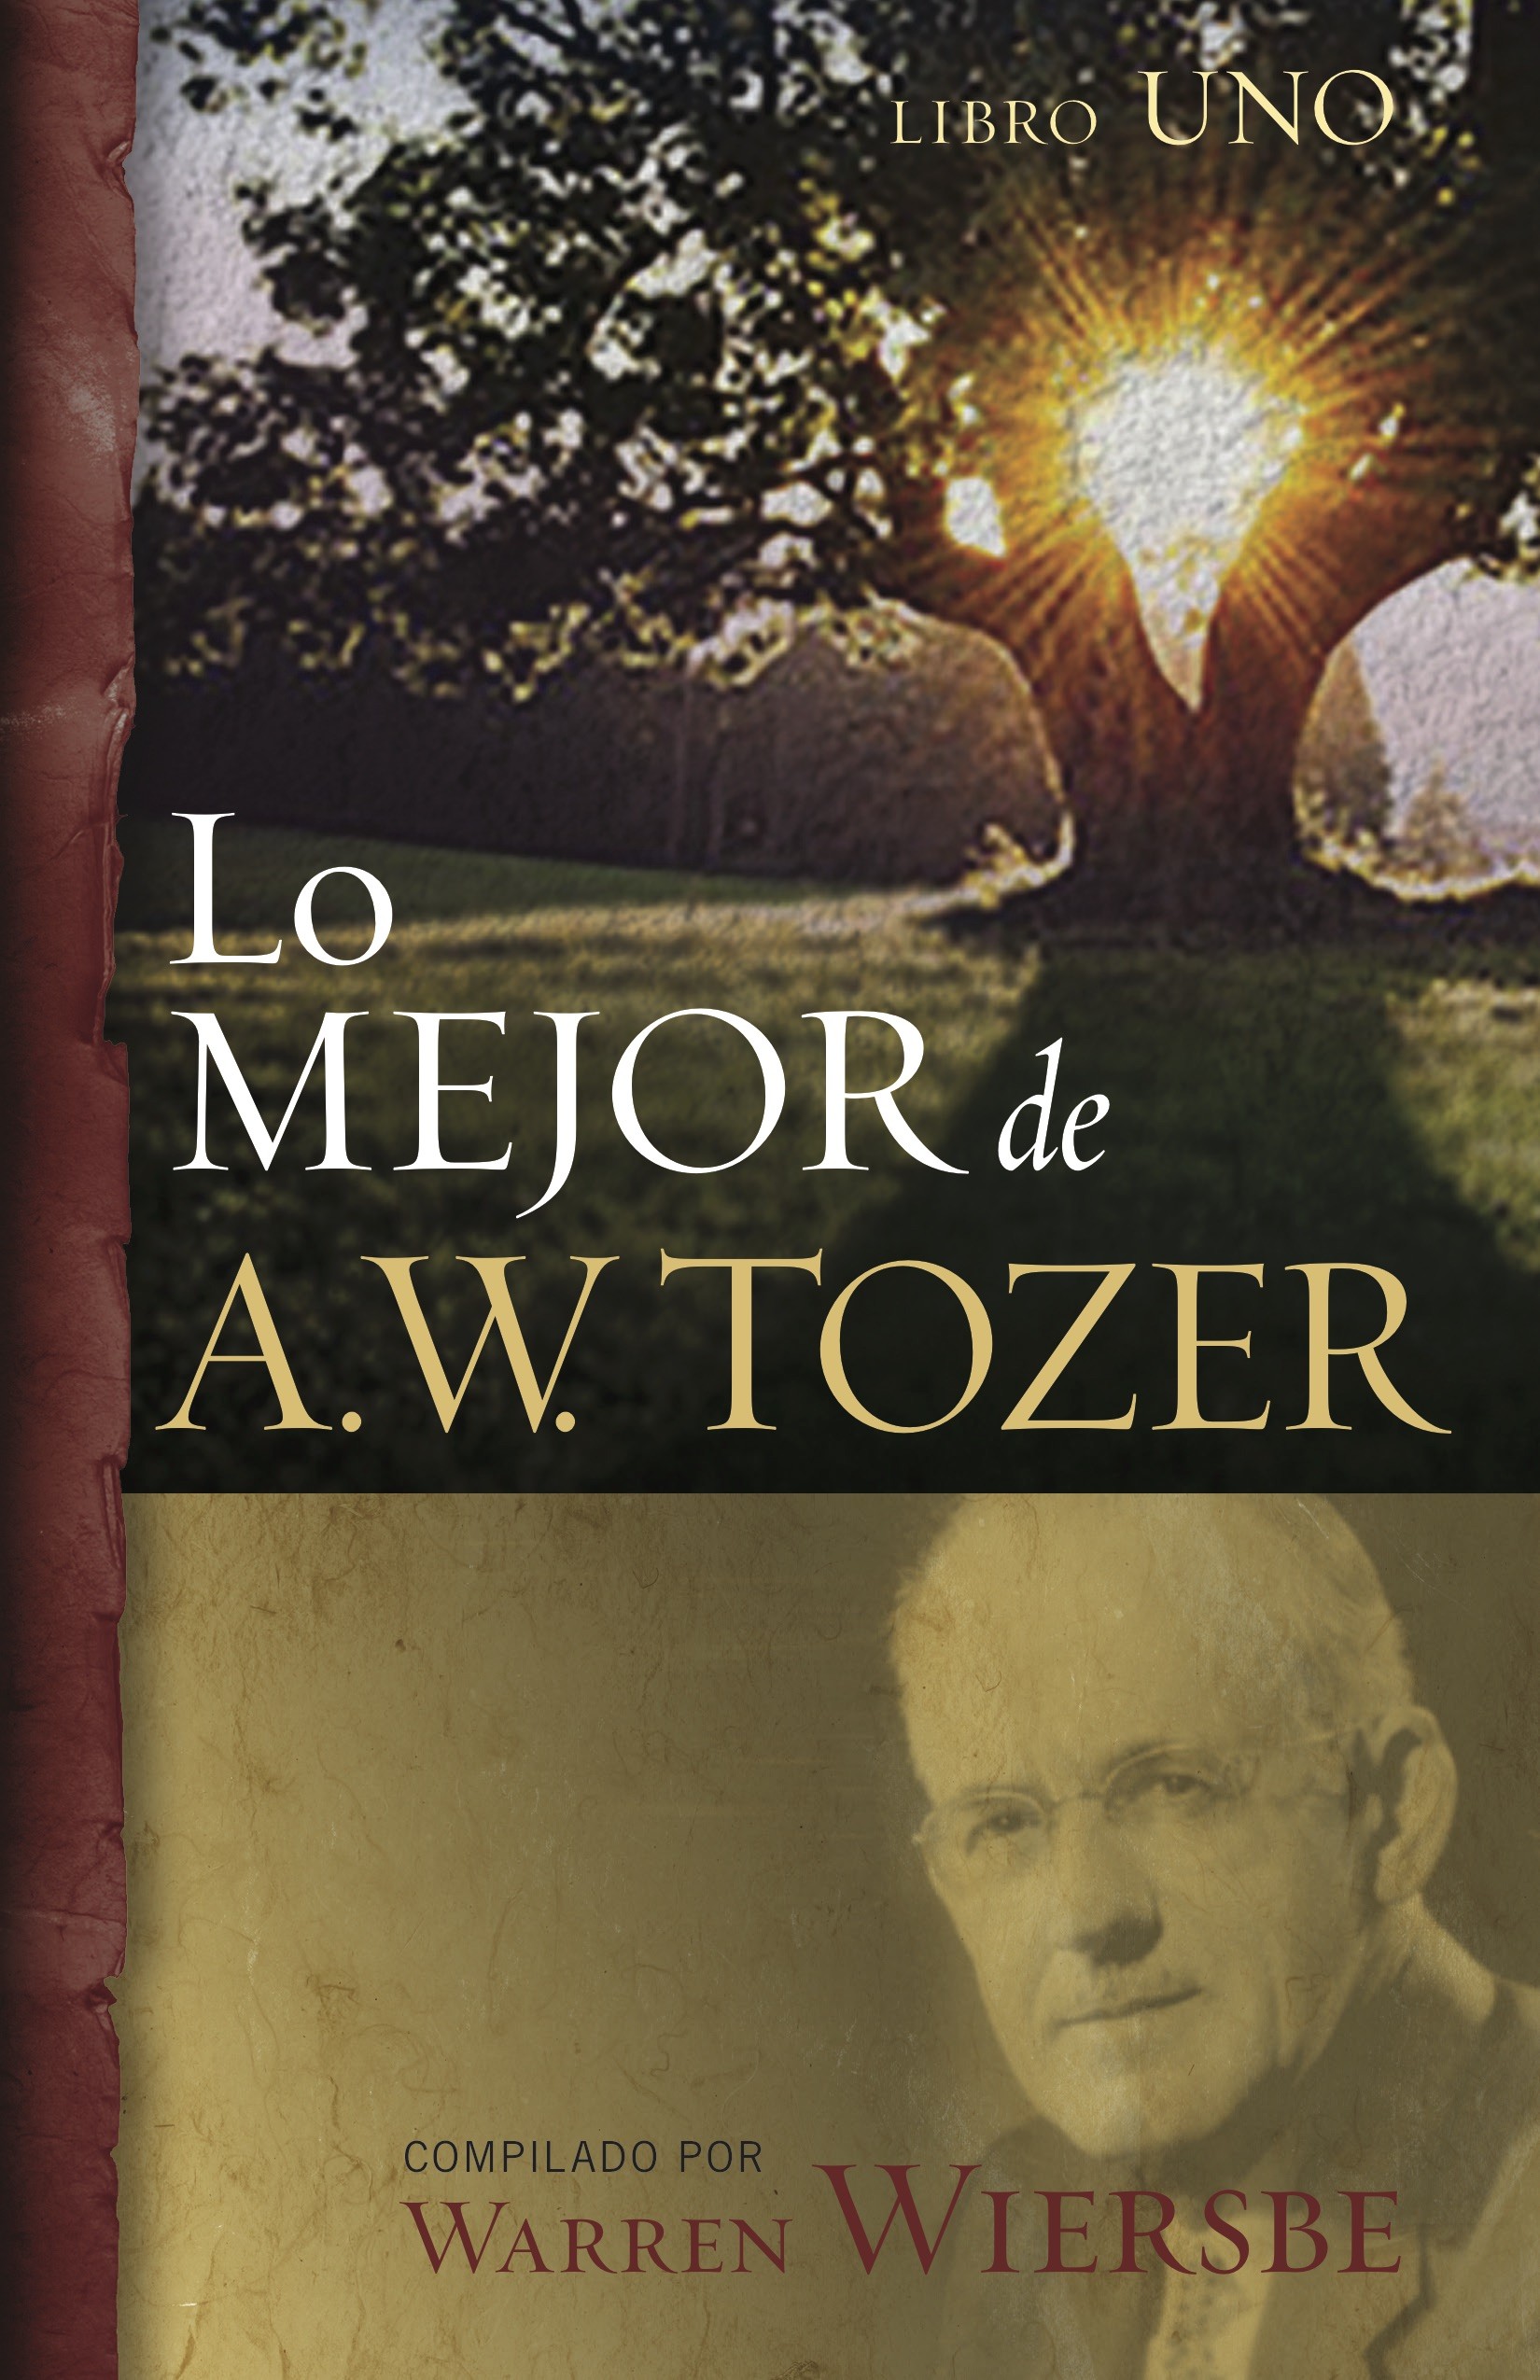 Lo mejor de A.W. Tozer - 9780825474811 - Tozer, A.W.